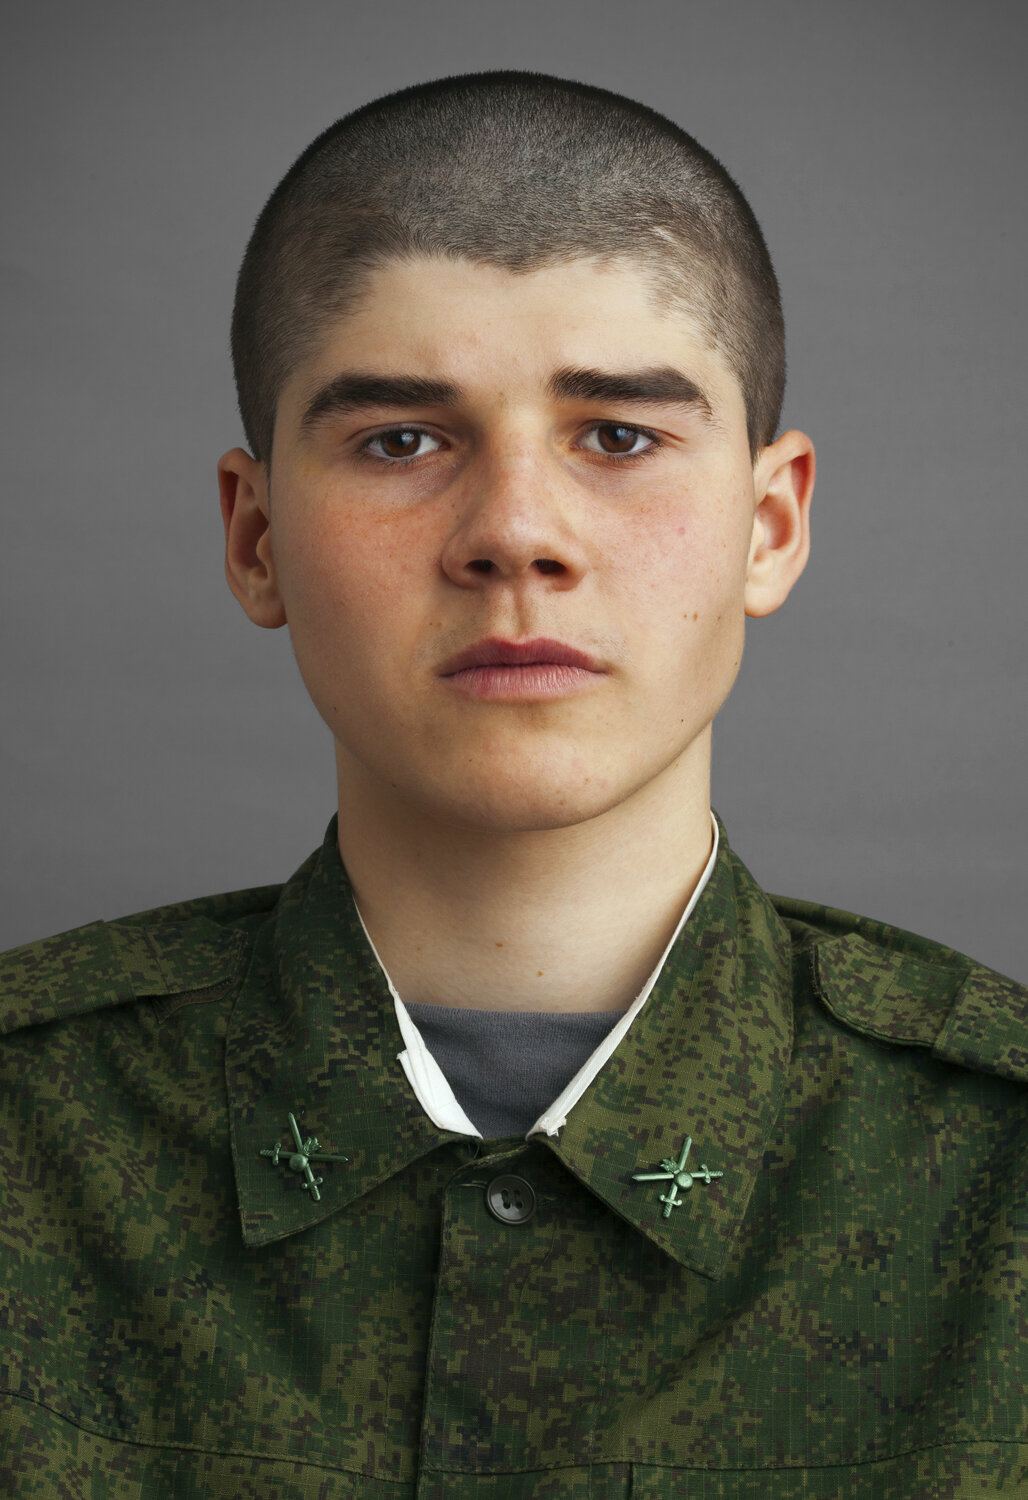 Army_Tamanskaya_111113_2991.jpg